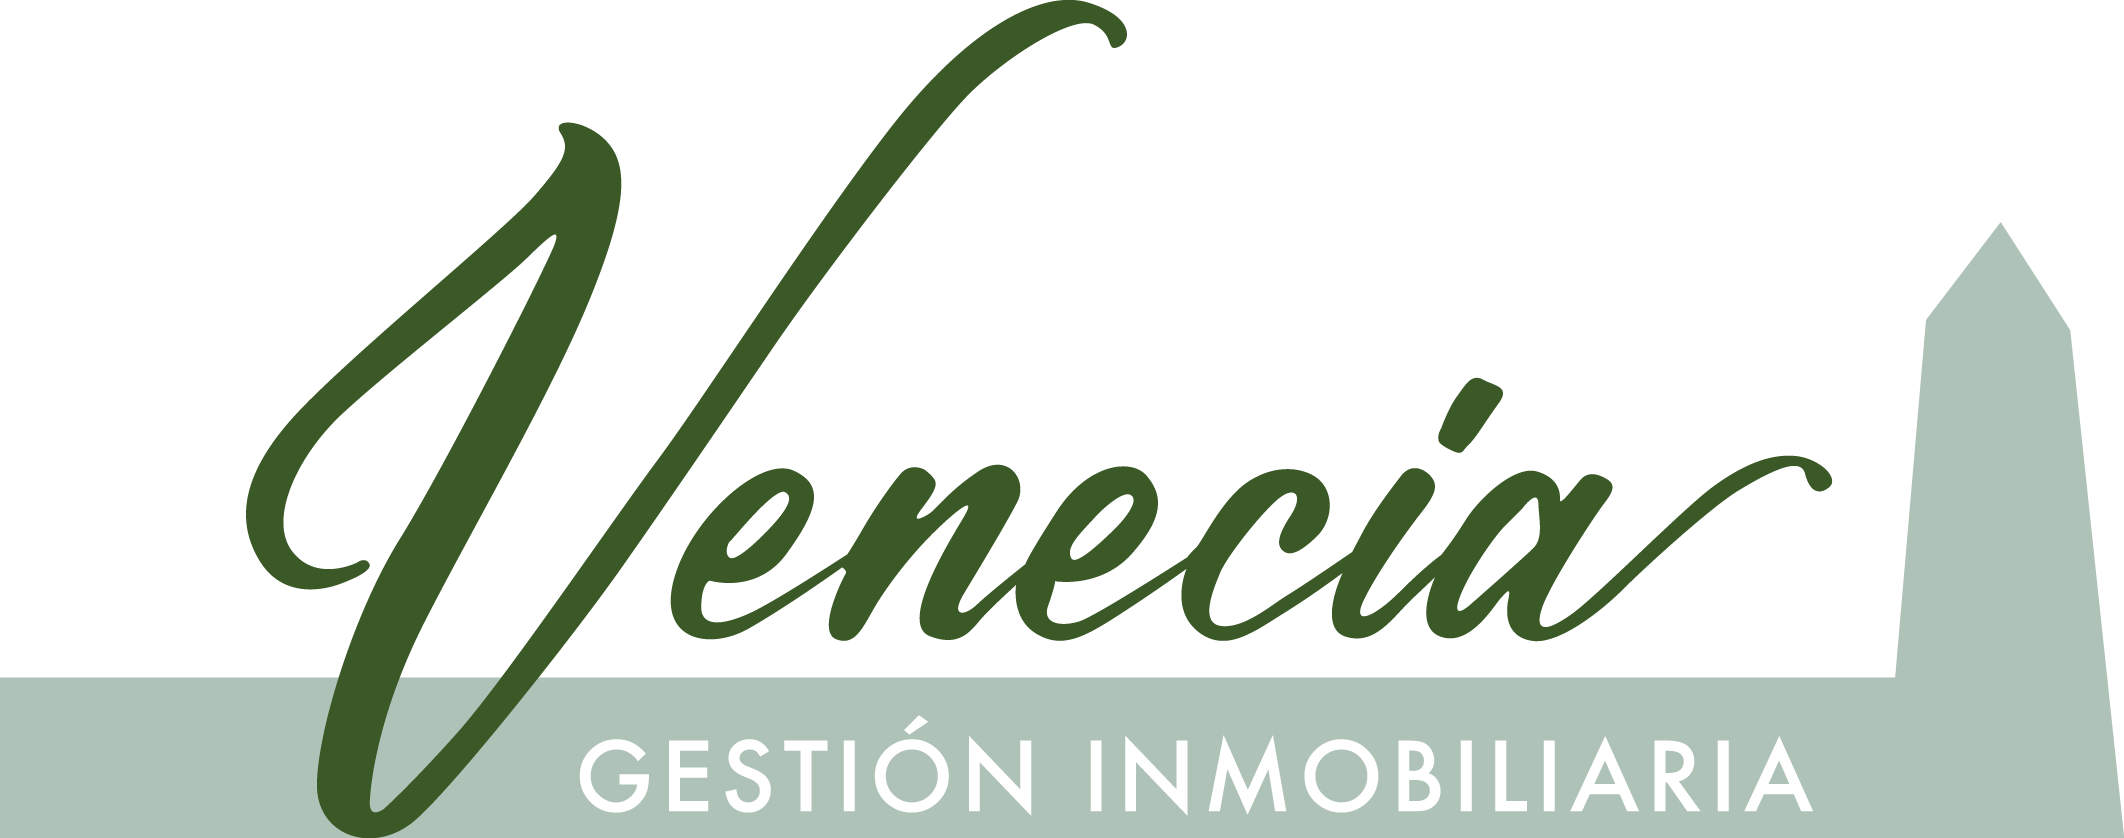 Logotipo de Venecia Gestión Inmobiliaria